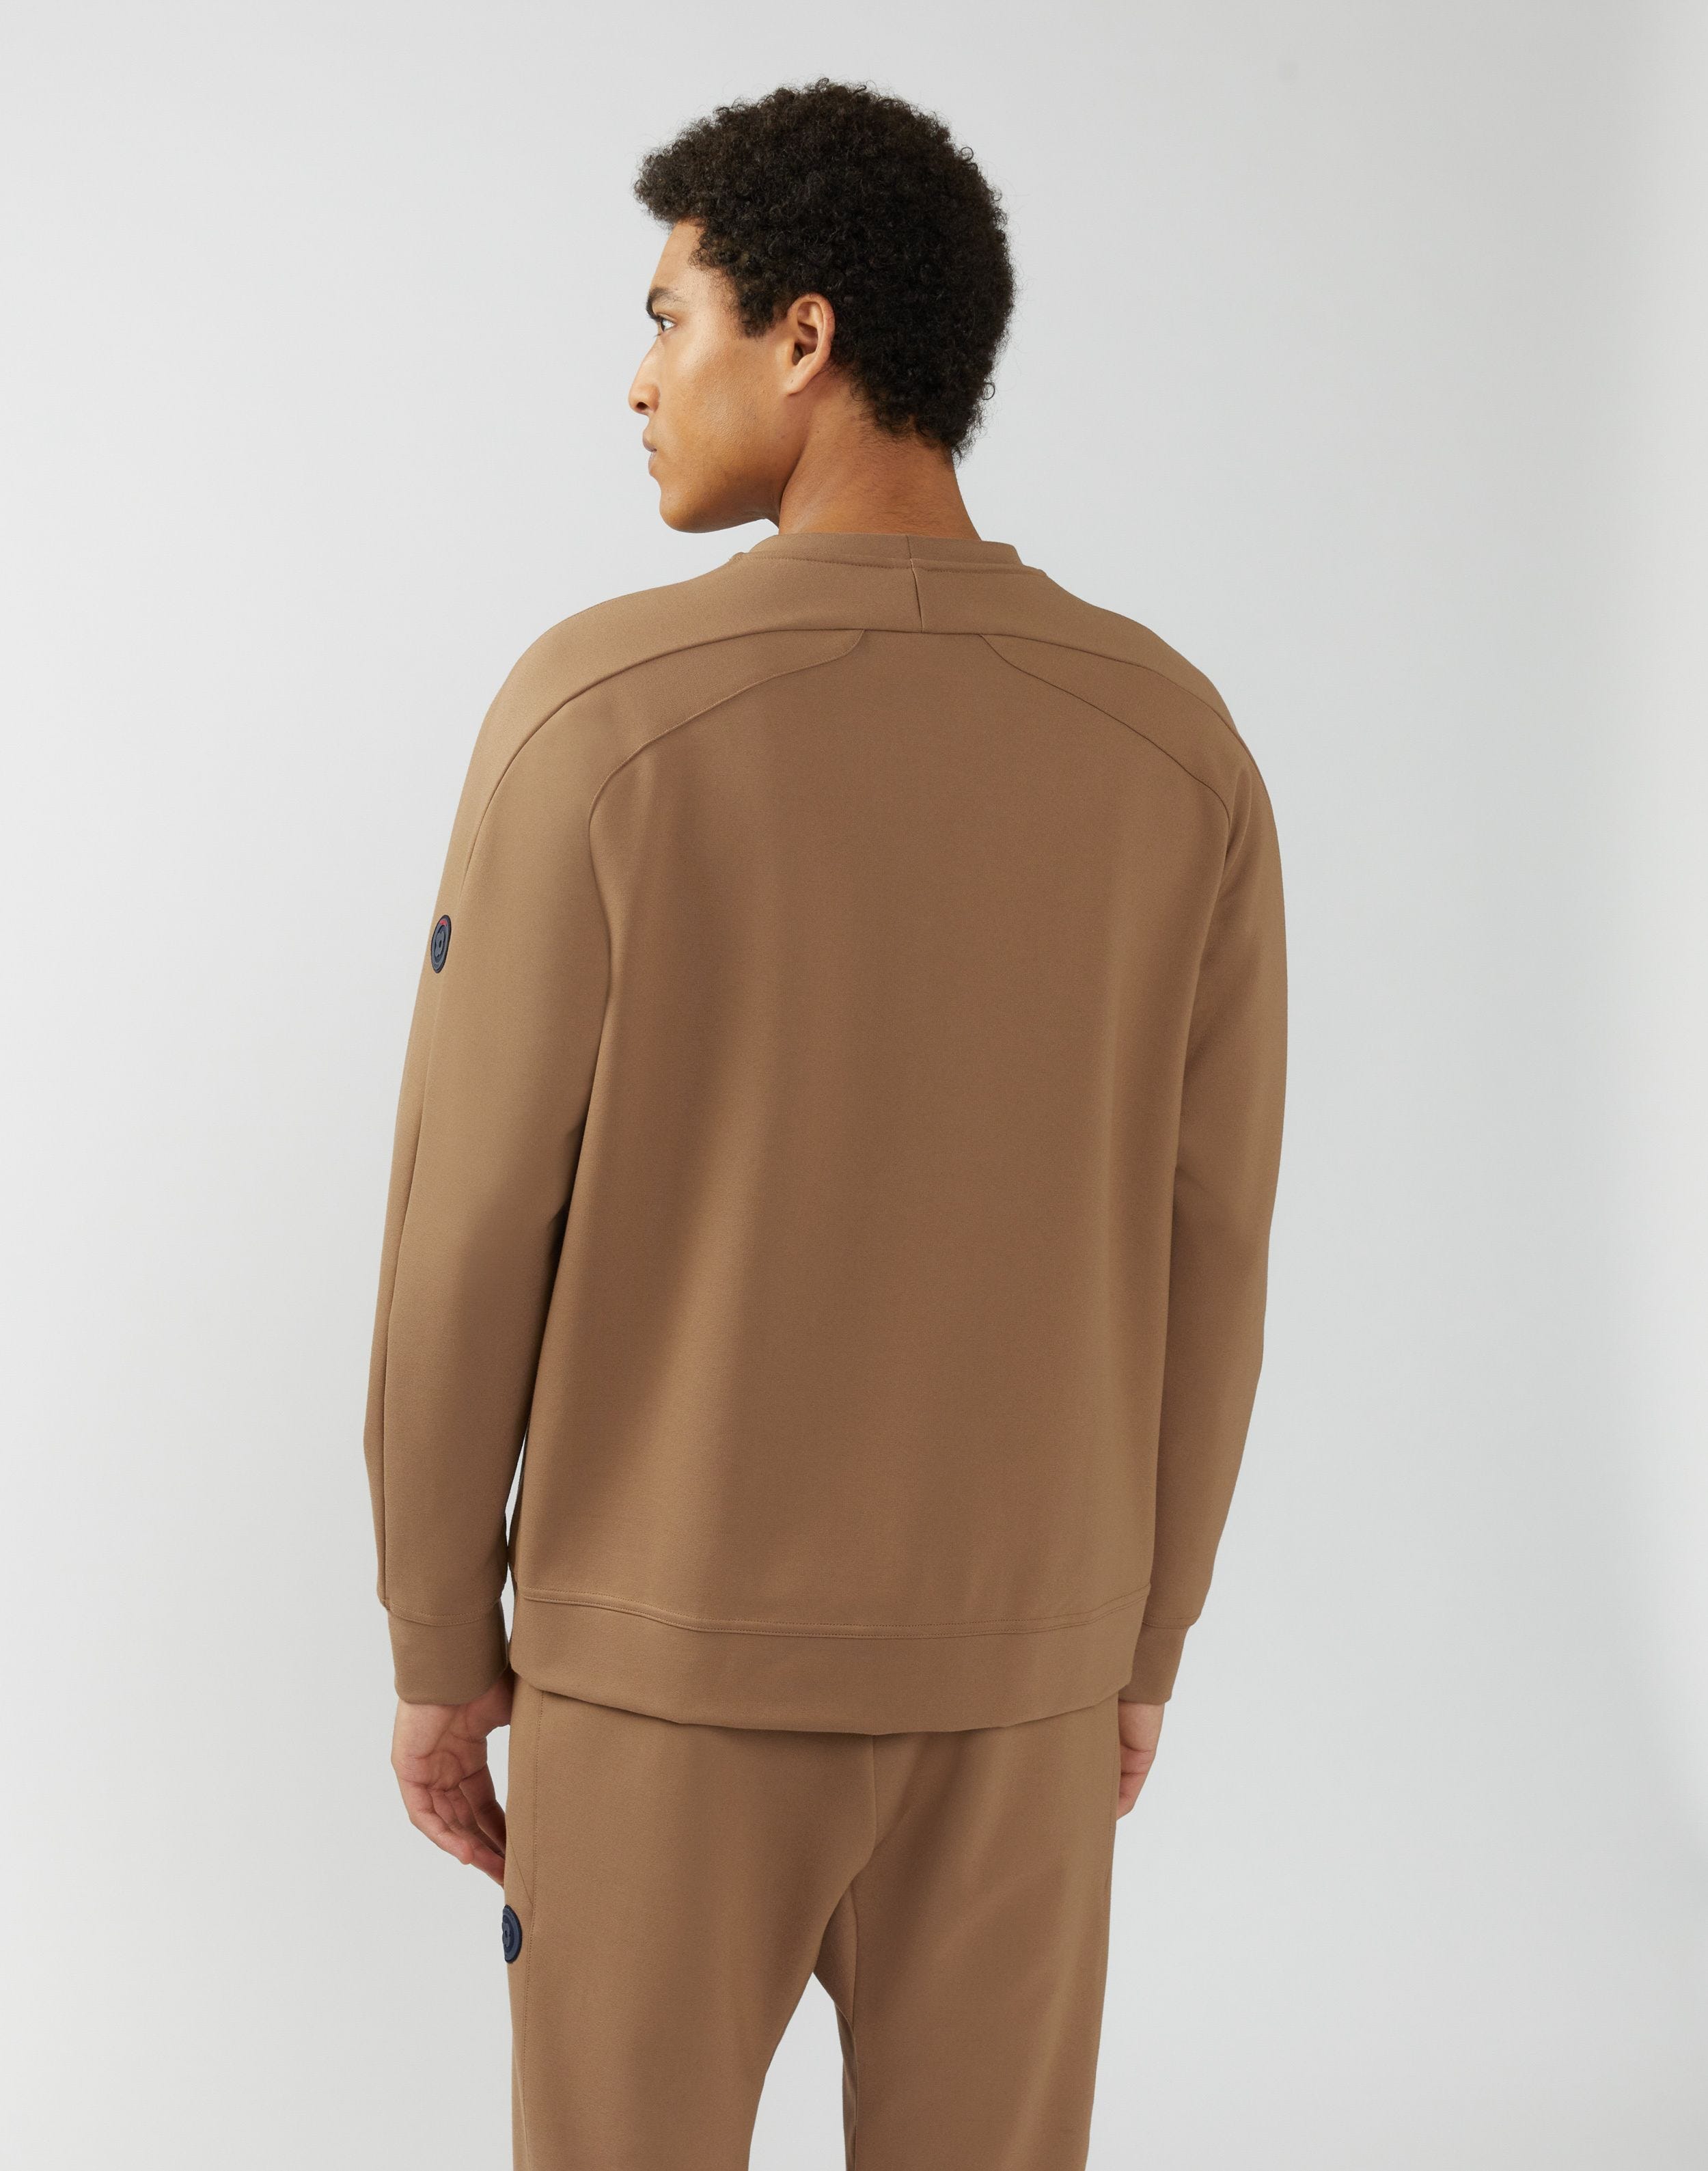 Camel-brown sweatshirt in hi-tech jersey - Easy Wear